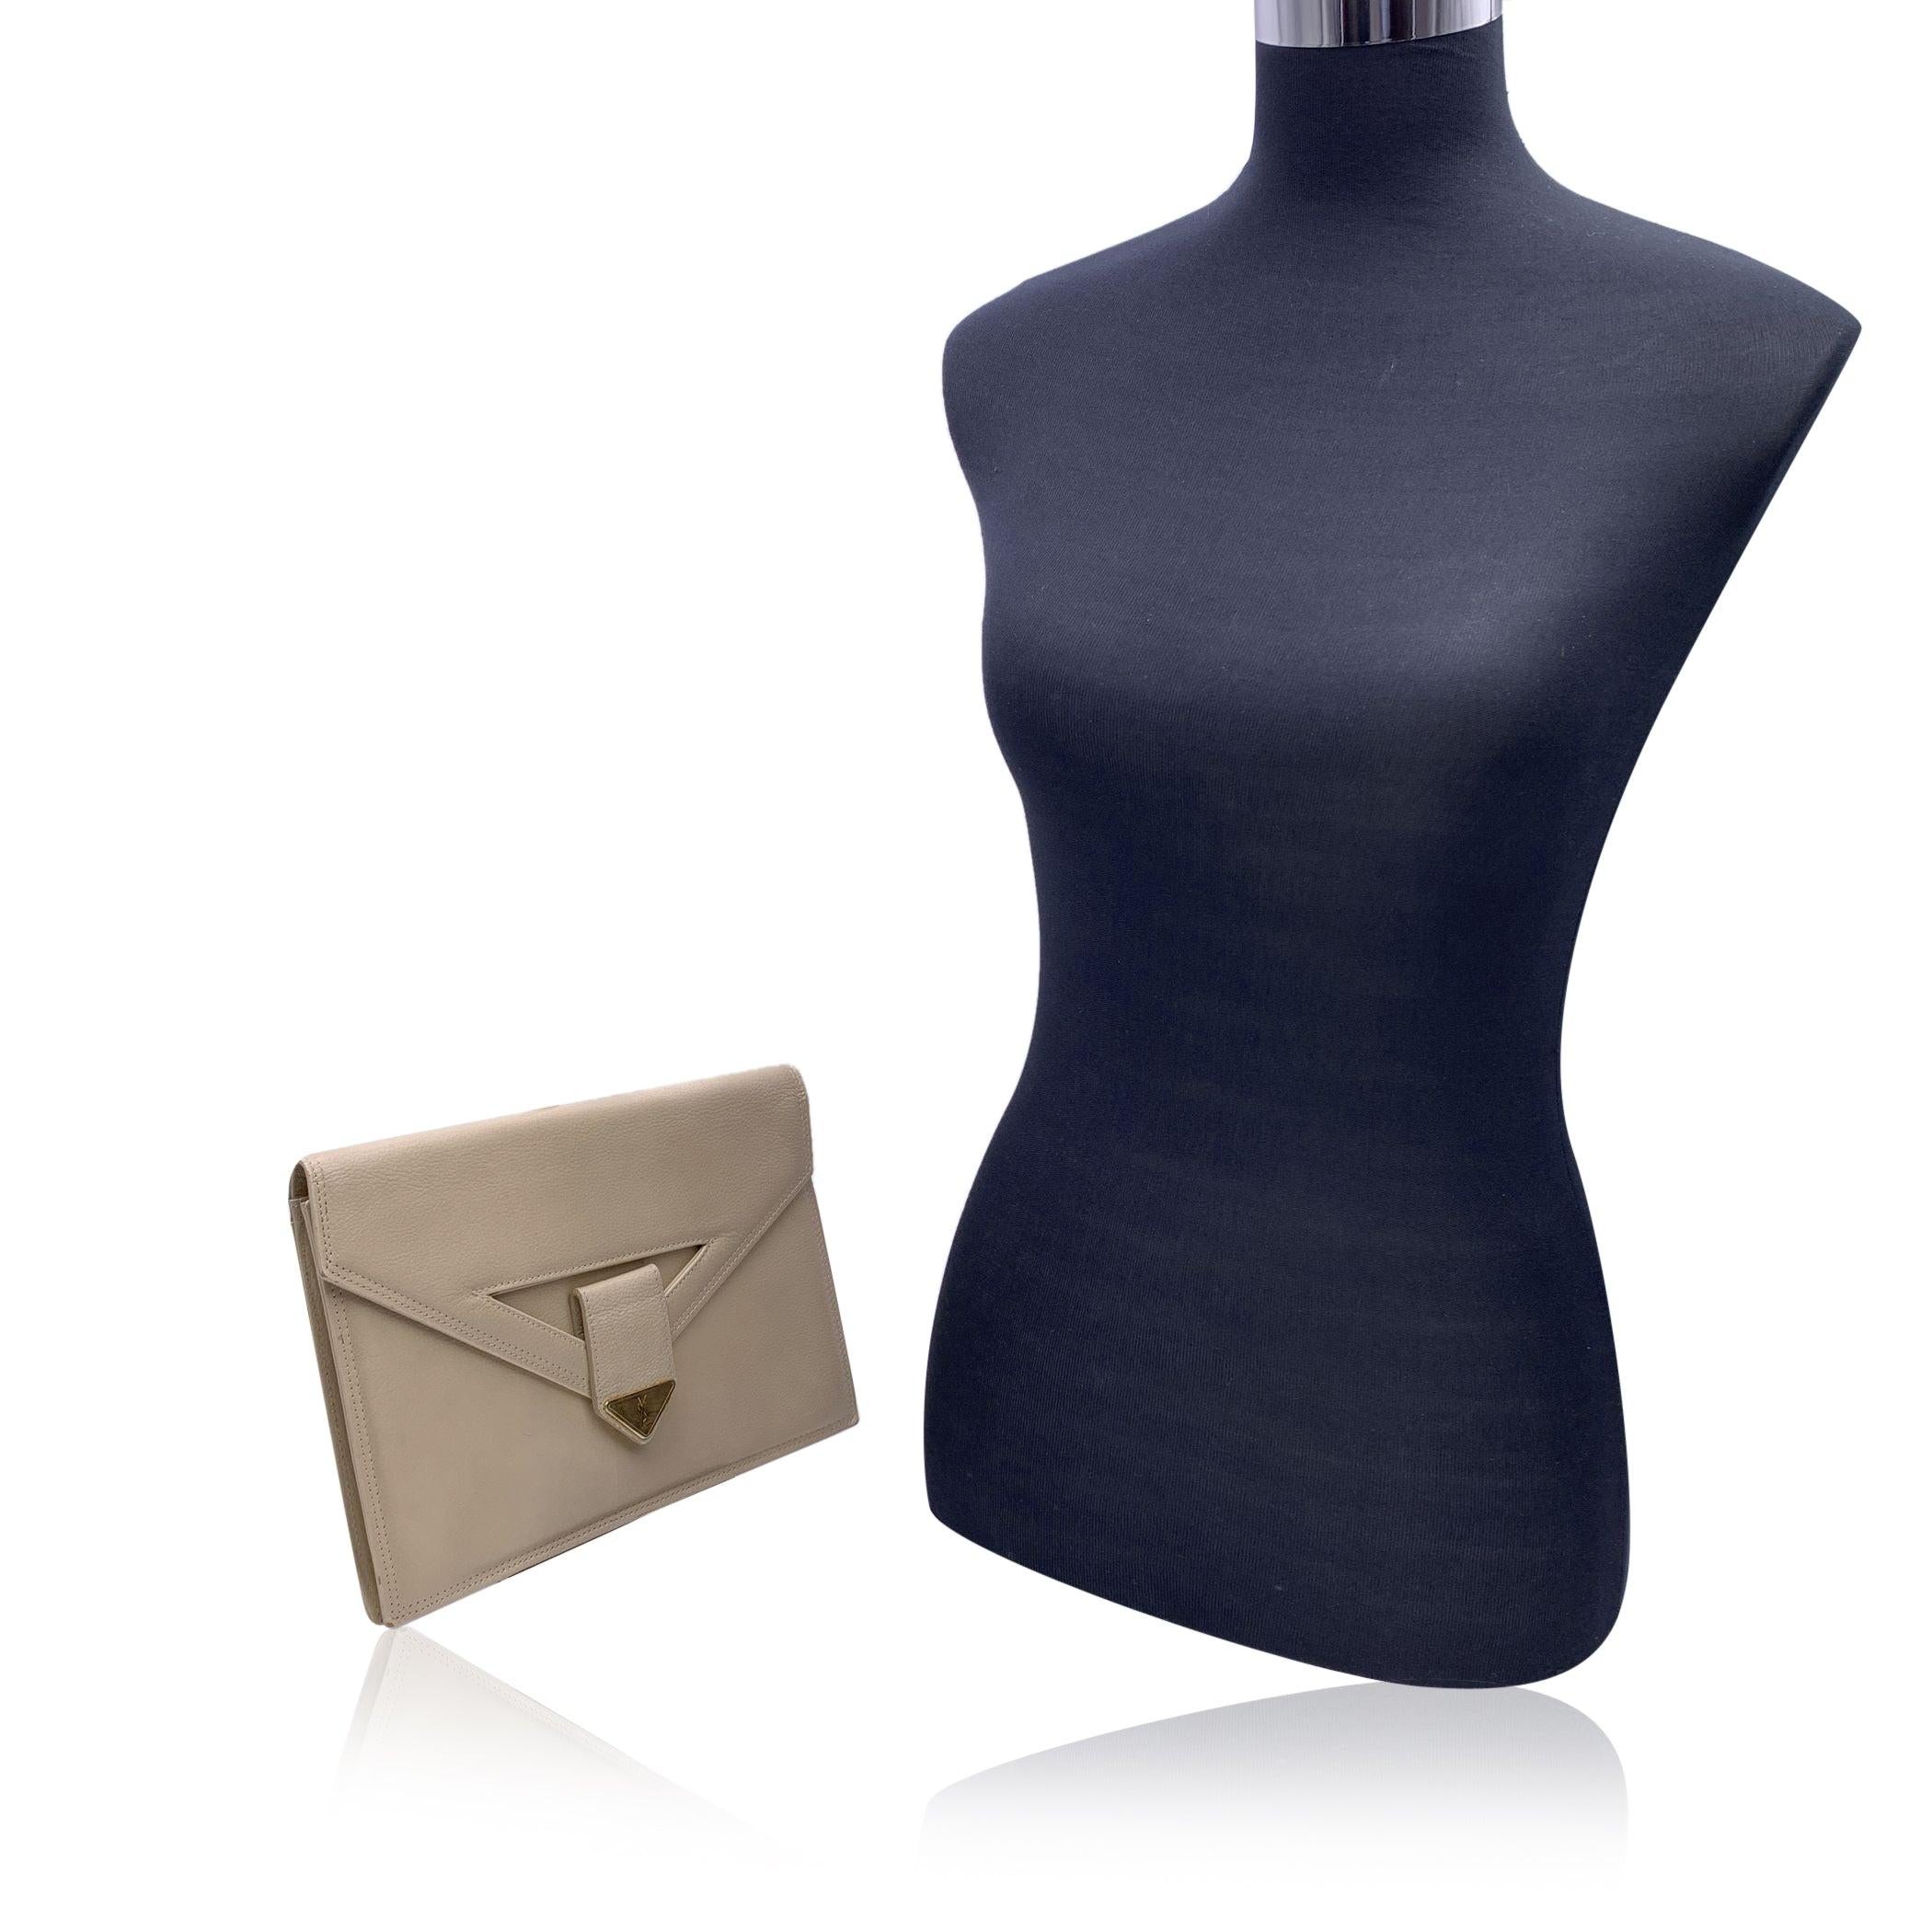 Yves Saint Laurent Vintage Clutch Bag aus beigefarbenem Leder. Sie hat eine Klappe mit Magnetknopfverschluss auf der Vorderseite. Goldene Metalllasche mit YSL-Logo auf der Vorderseite. 1 offene Tasche hinten. Braunes Stofffutter. 1 Seitentasche mit